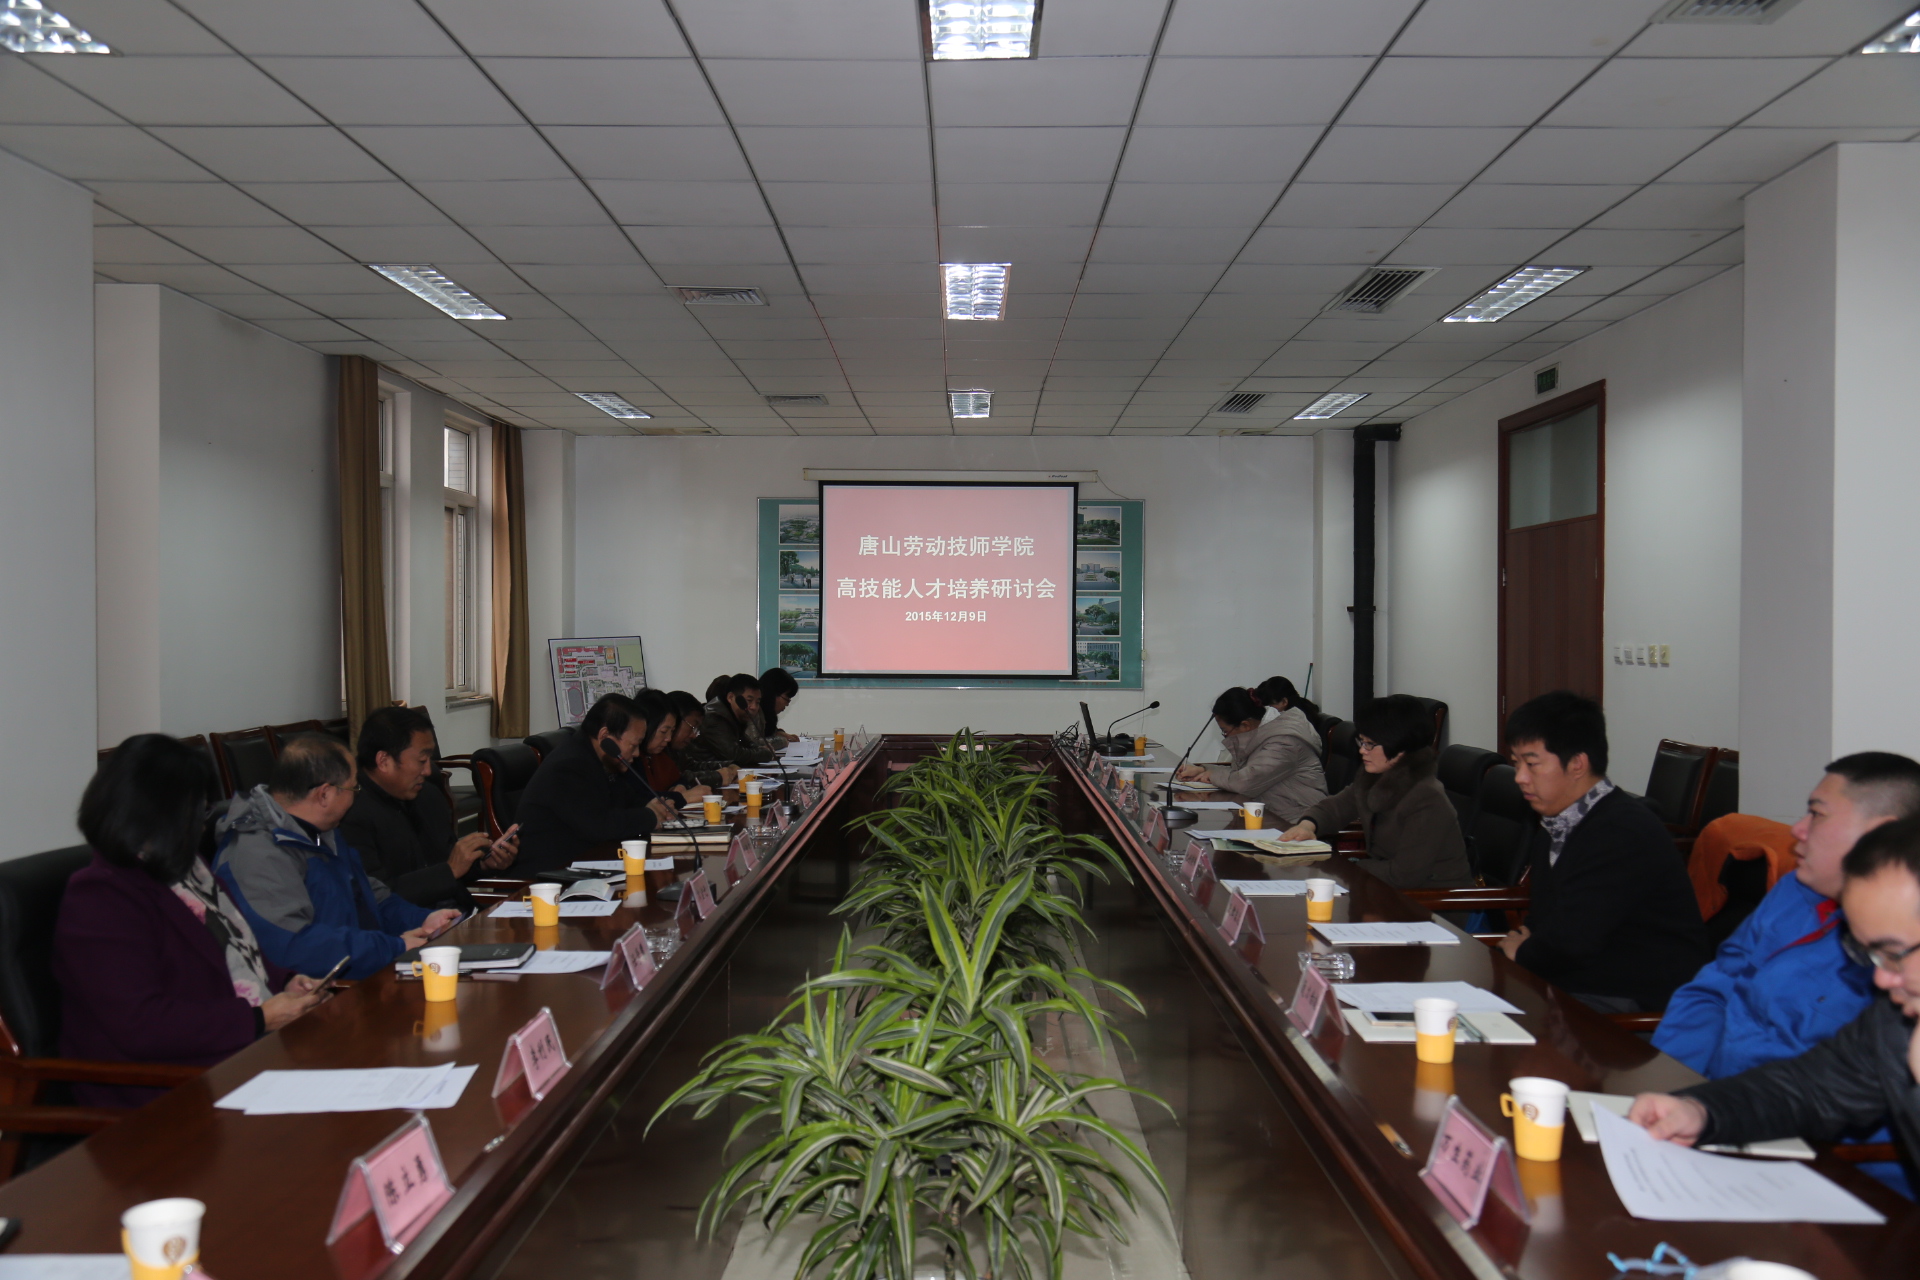 我院举行京津冀合作企业培养高级技术技能人才研讨会